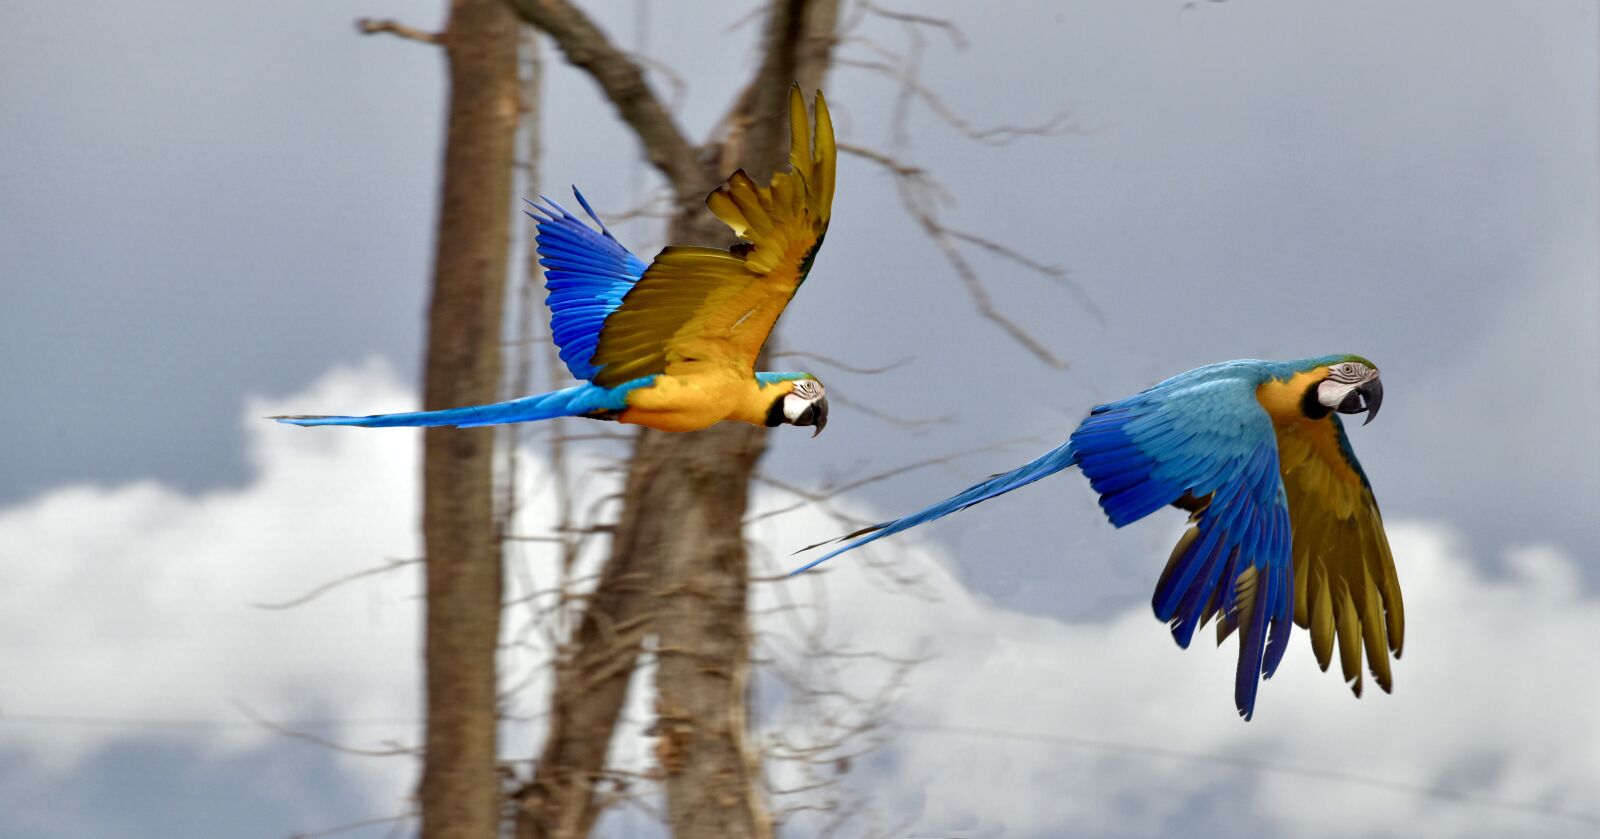 Nikon D810 sample photo. Parrot, bird, exotic photography